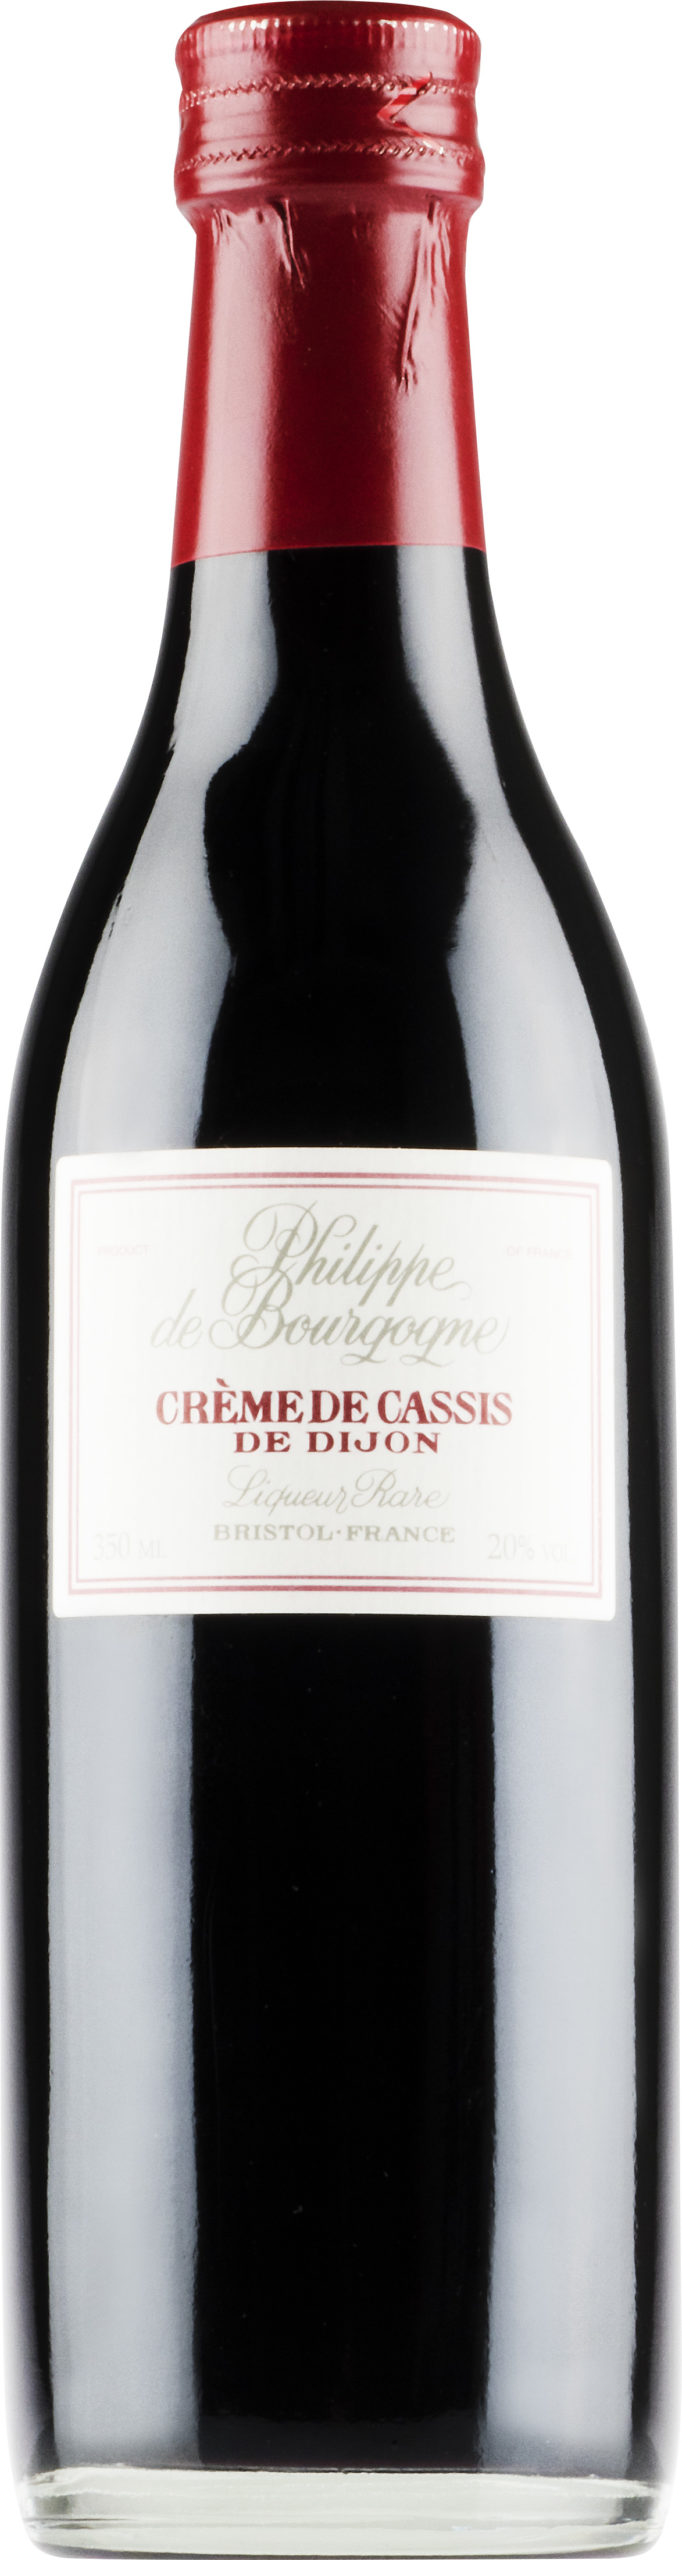 Philippe de Bourgogne Crème de Cassis de Dijon